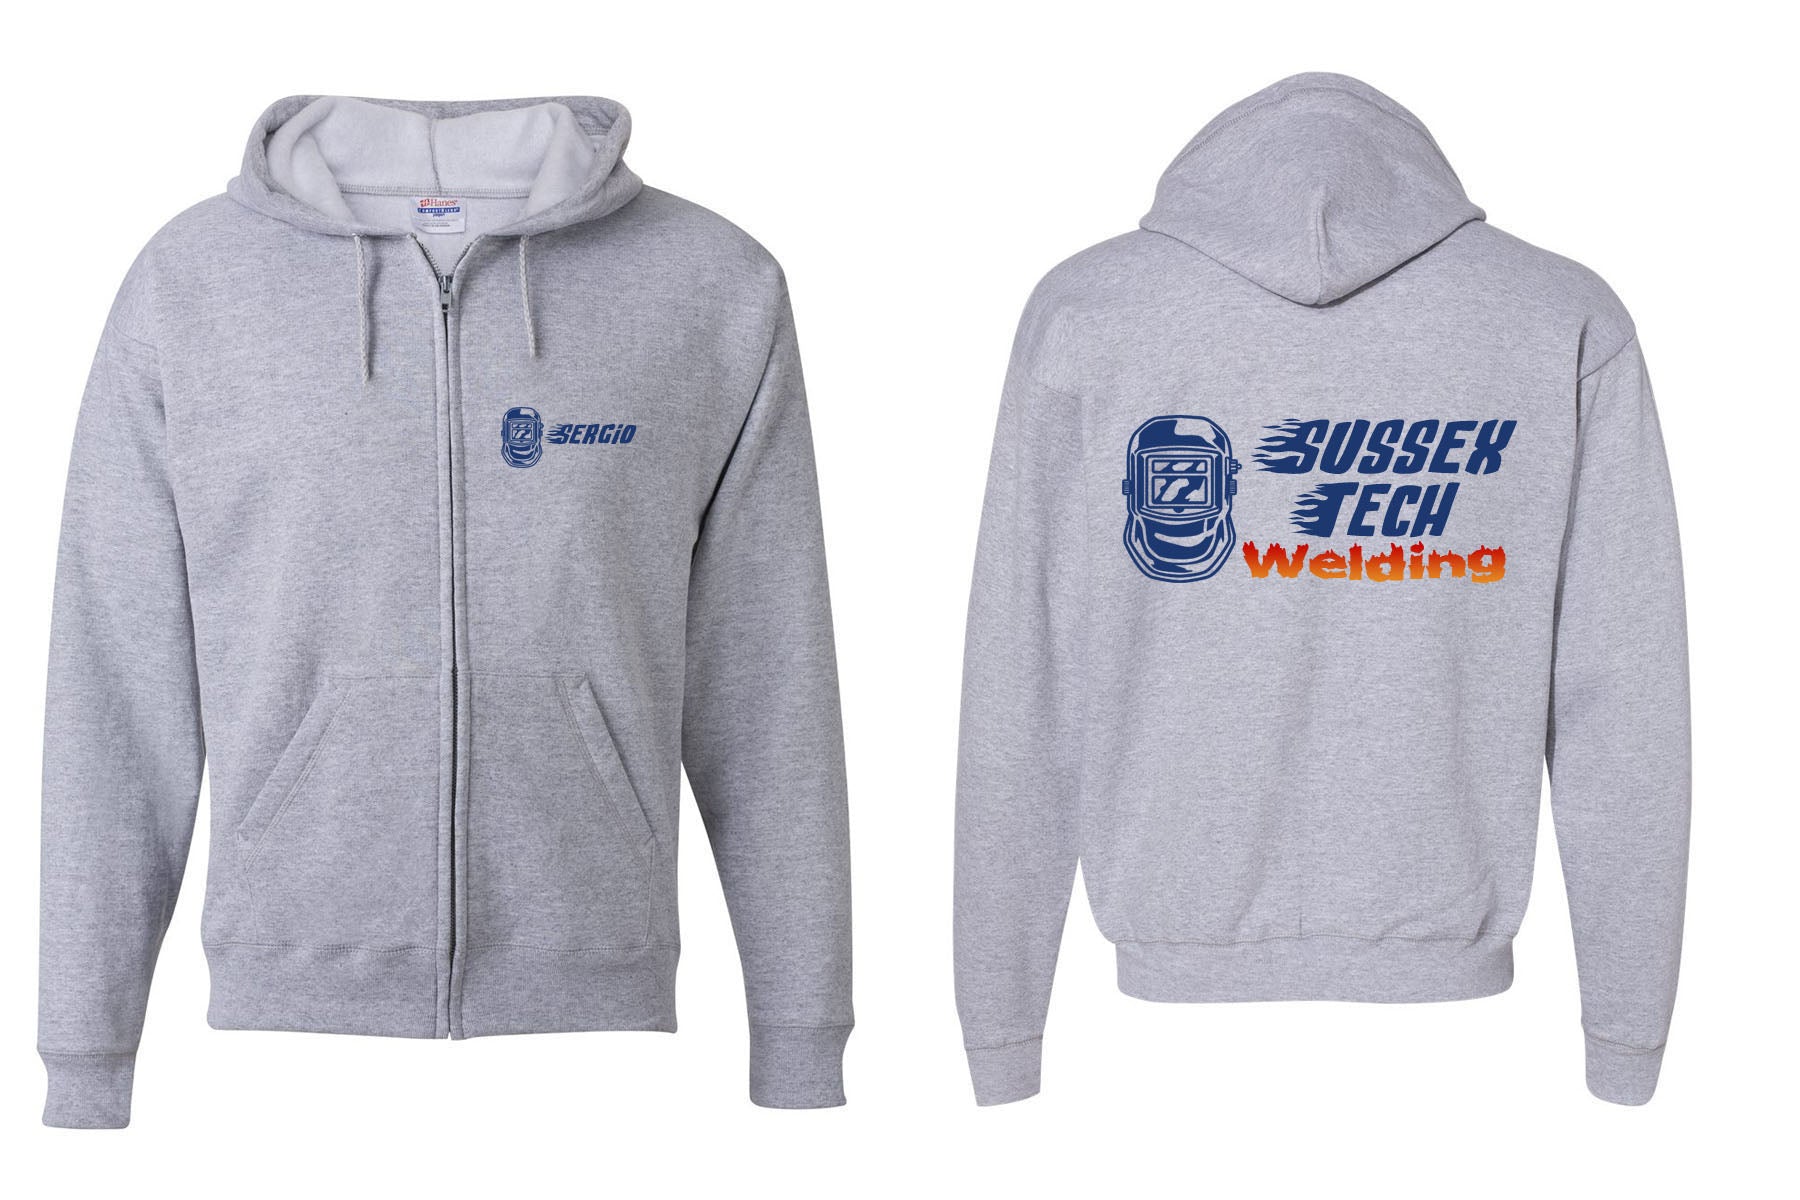 Sussex Tech Welding design 4 Zip up Sweatshirt